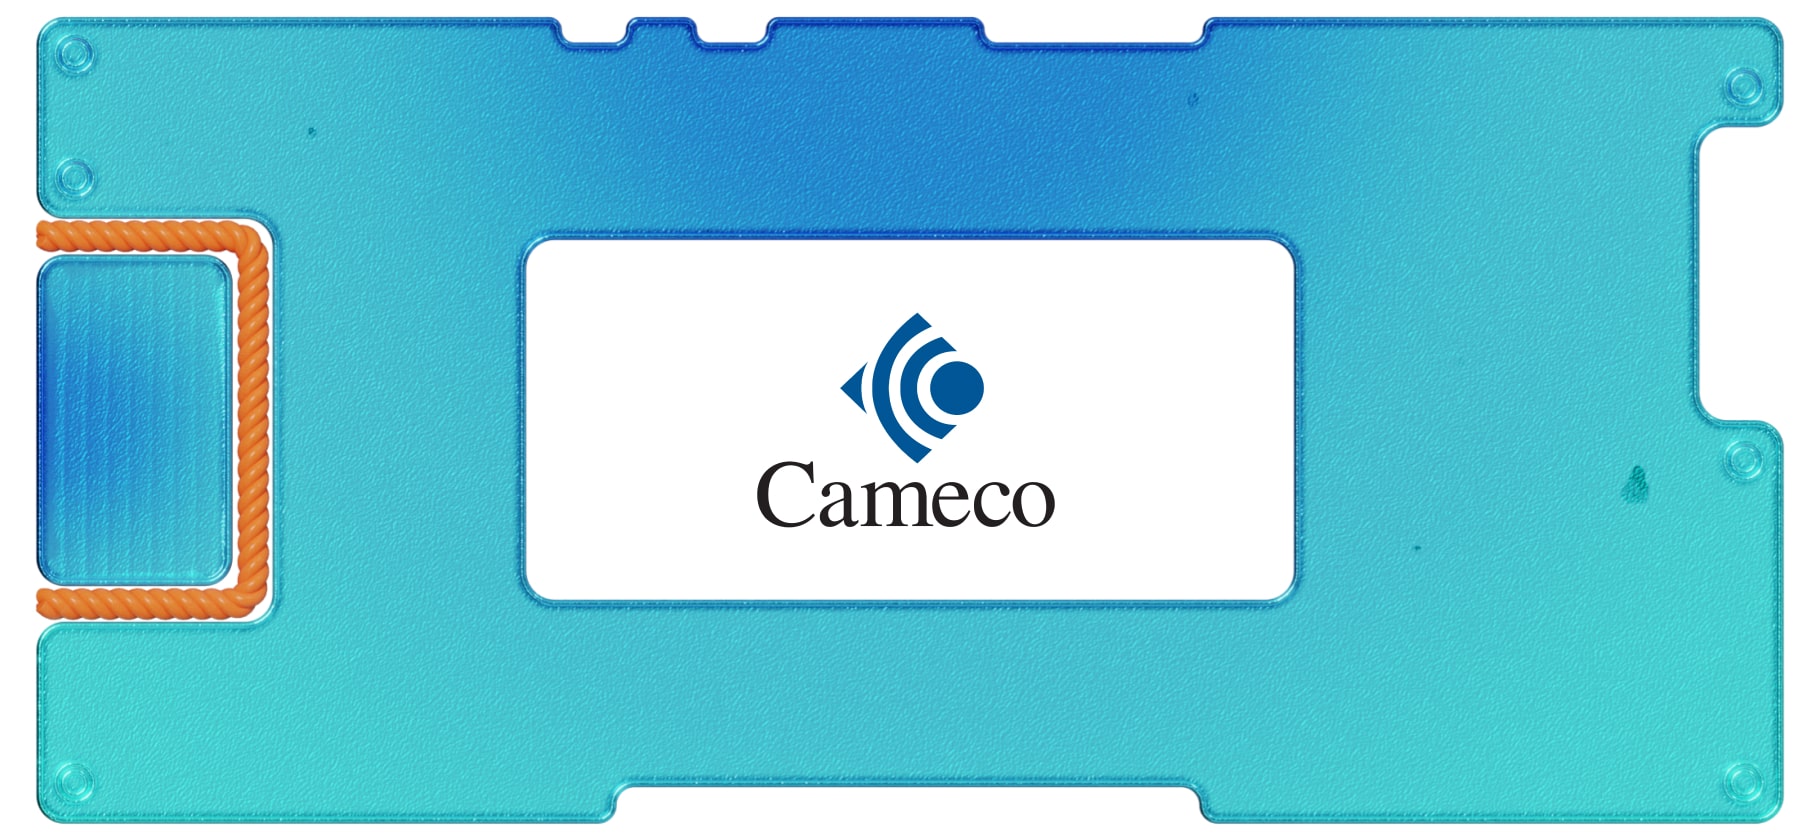 Обзор Cameco Corporation: вторая компания в урановой отрасли